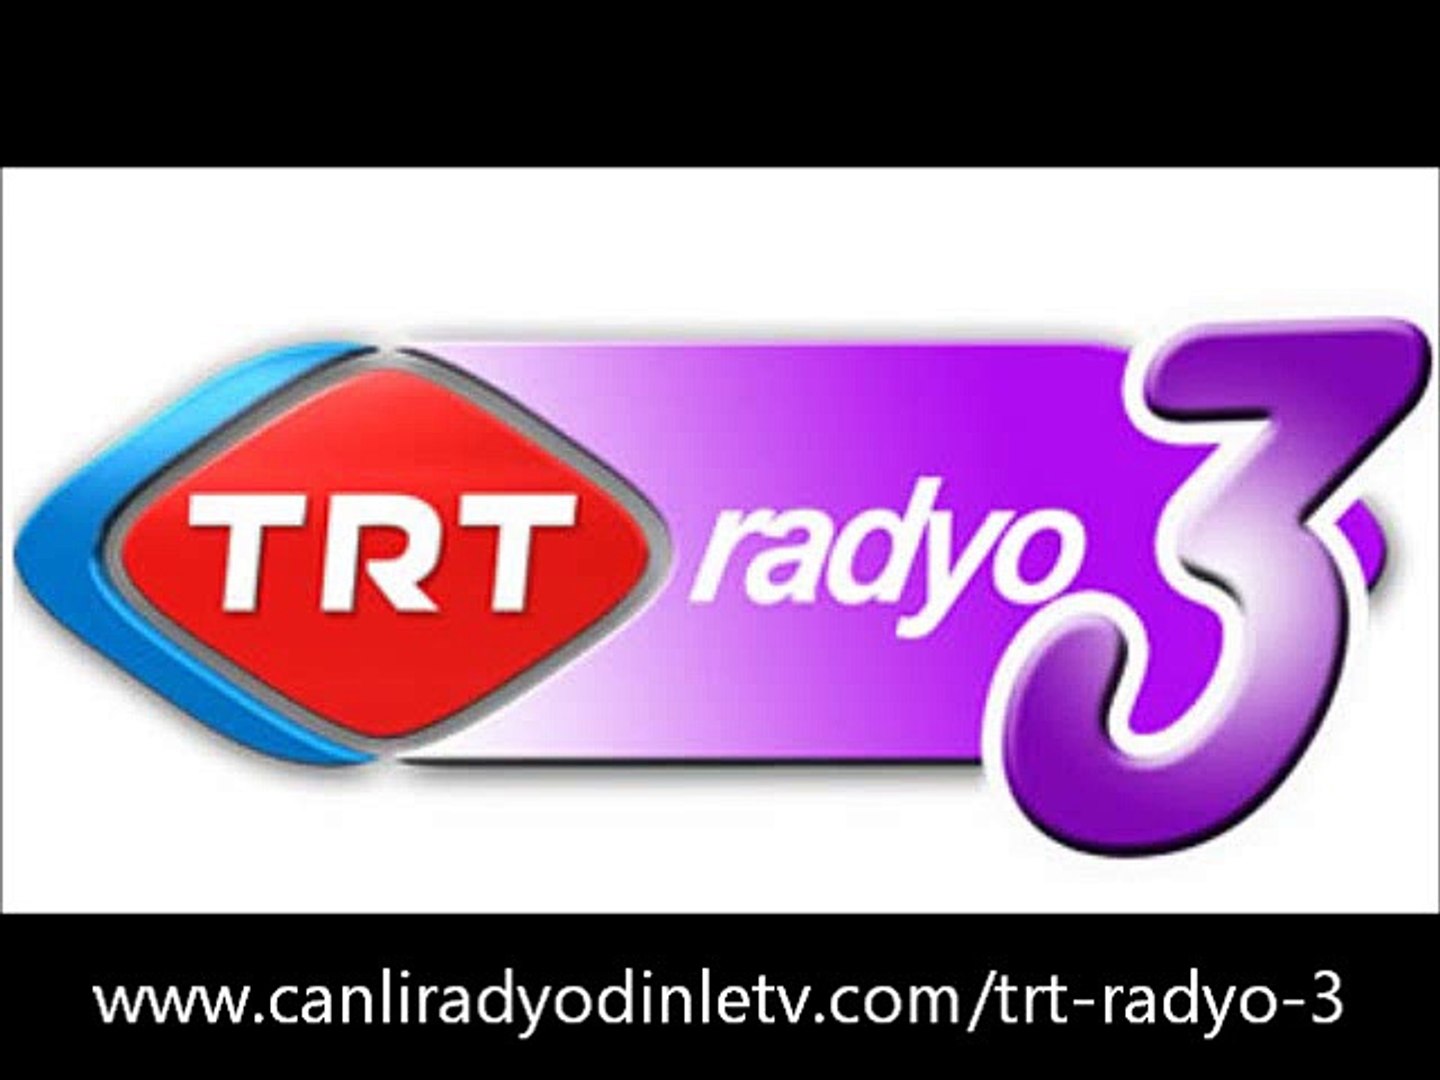 trt radyo 3 - Dailymotion Video